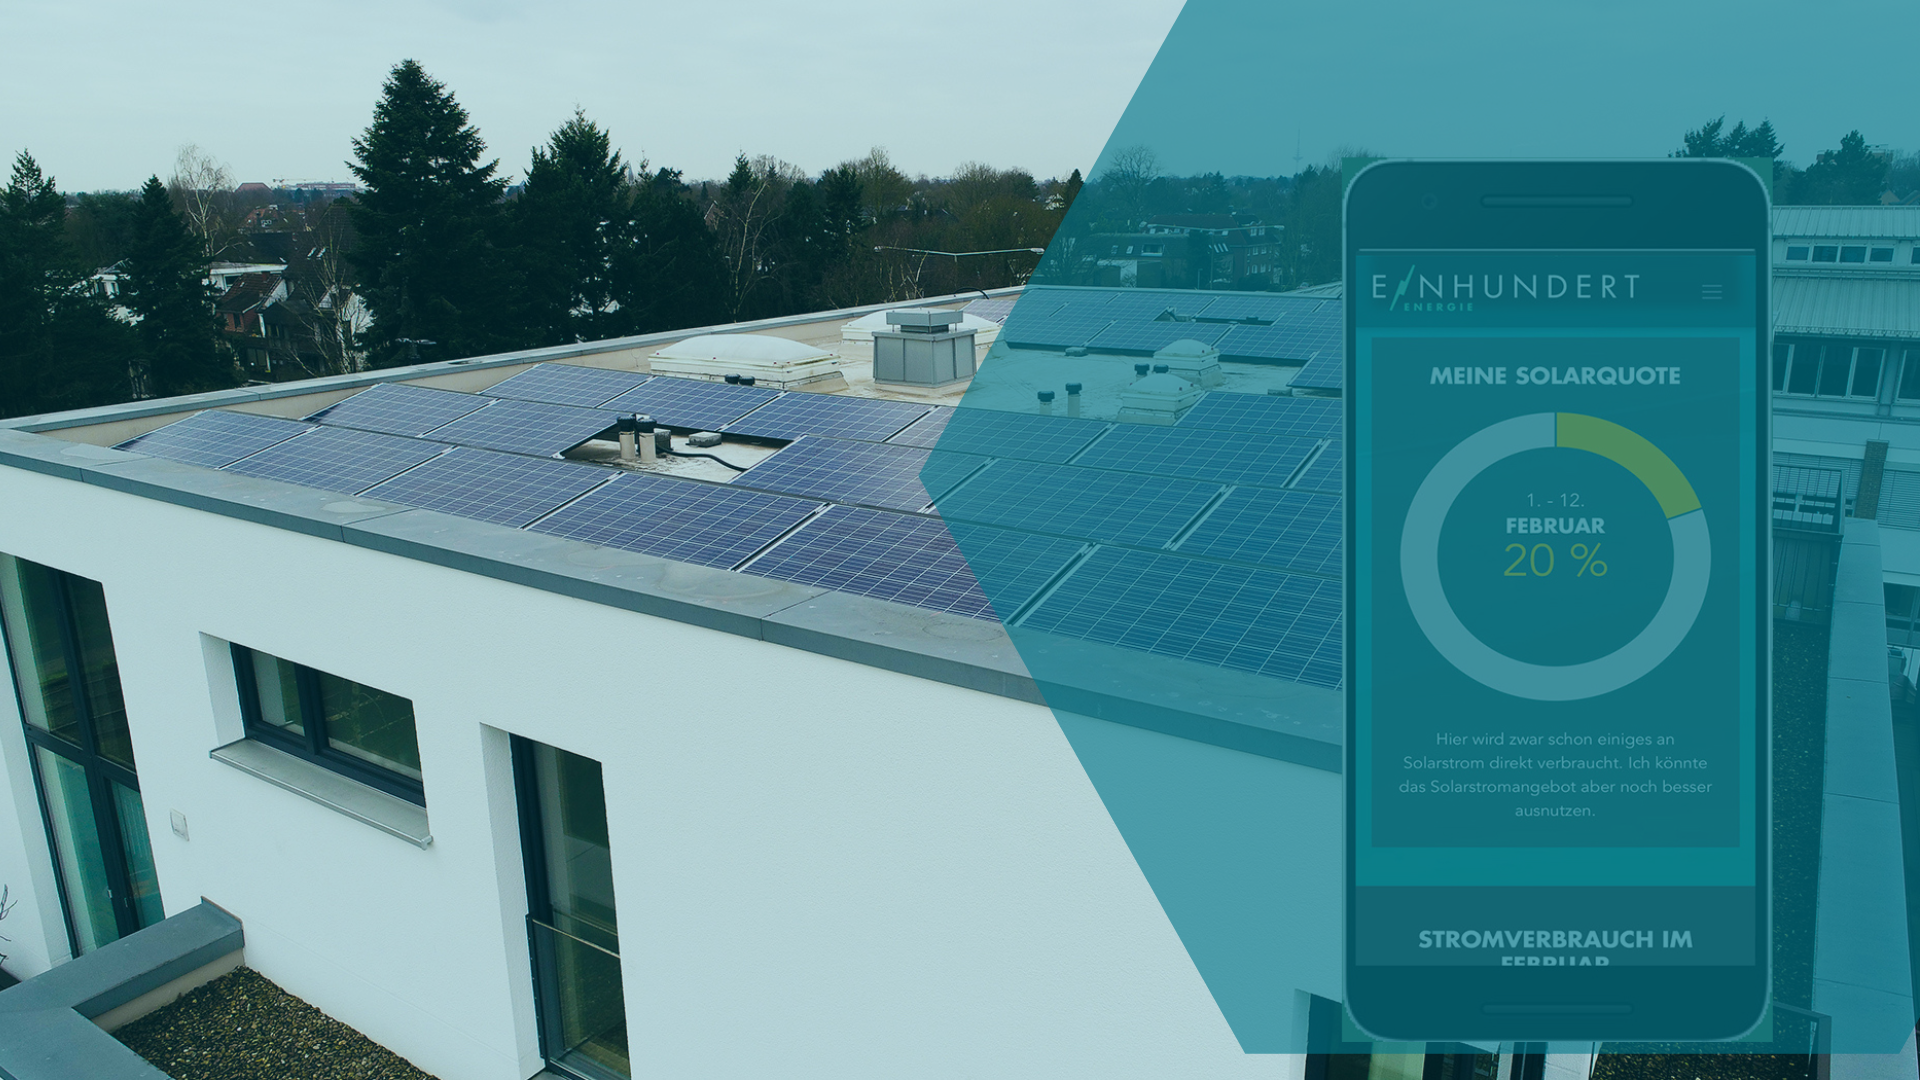 Das Bild zeigt ein Gebäude mit einem Solardach und ein App-Mockup von EINHUNDERT Energie